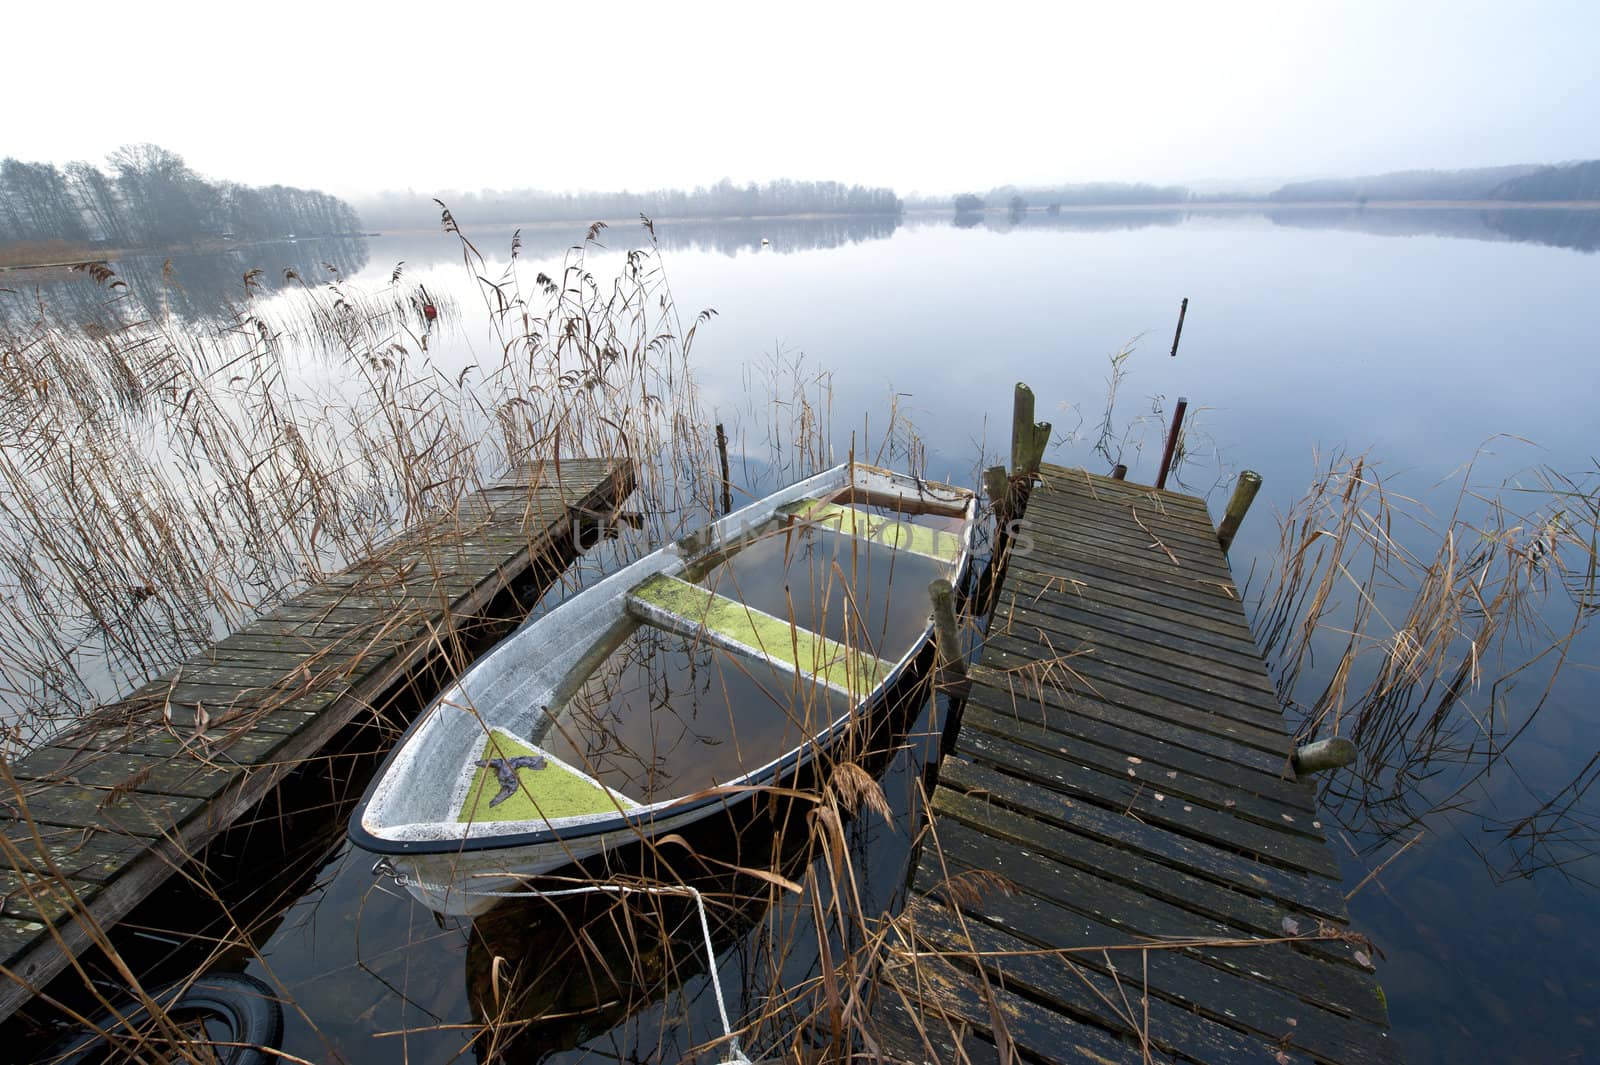 Abandoned boat at lake an misty november morning